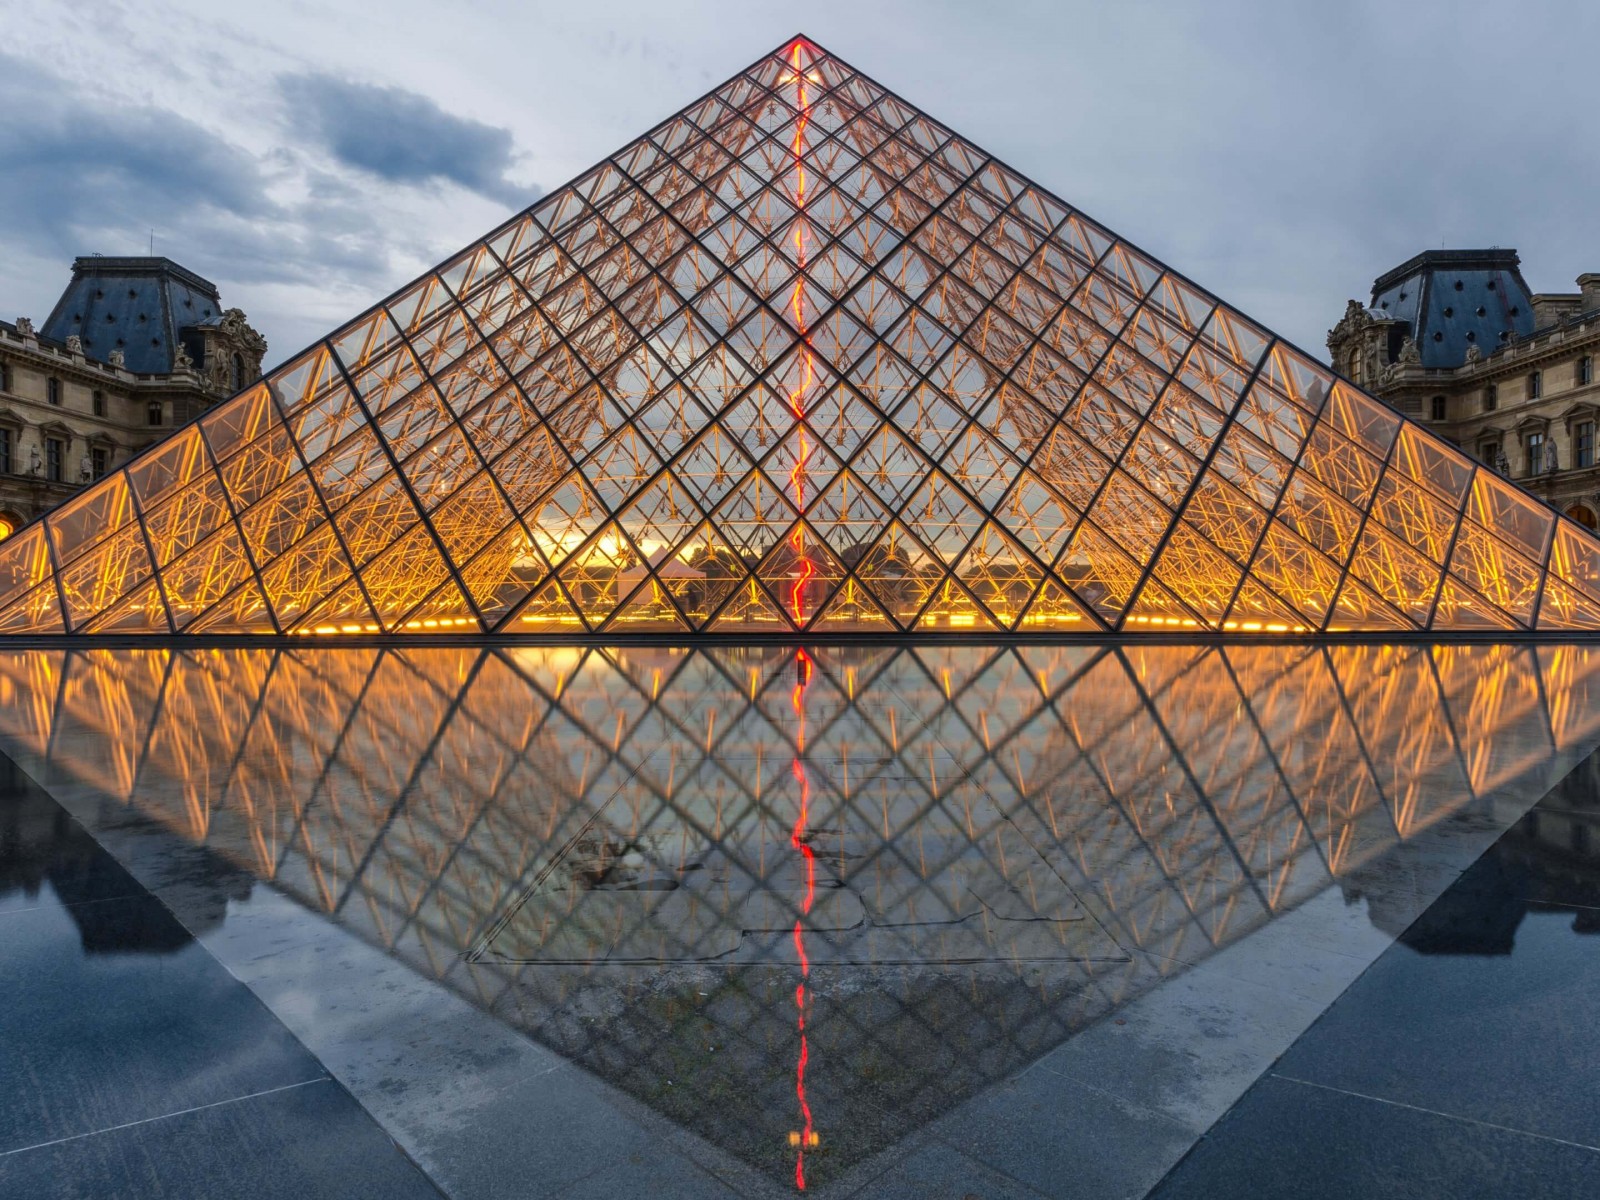 The Louvre HD Wallpaper For X HDwallpaper